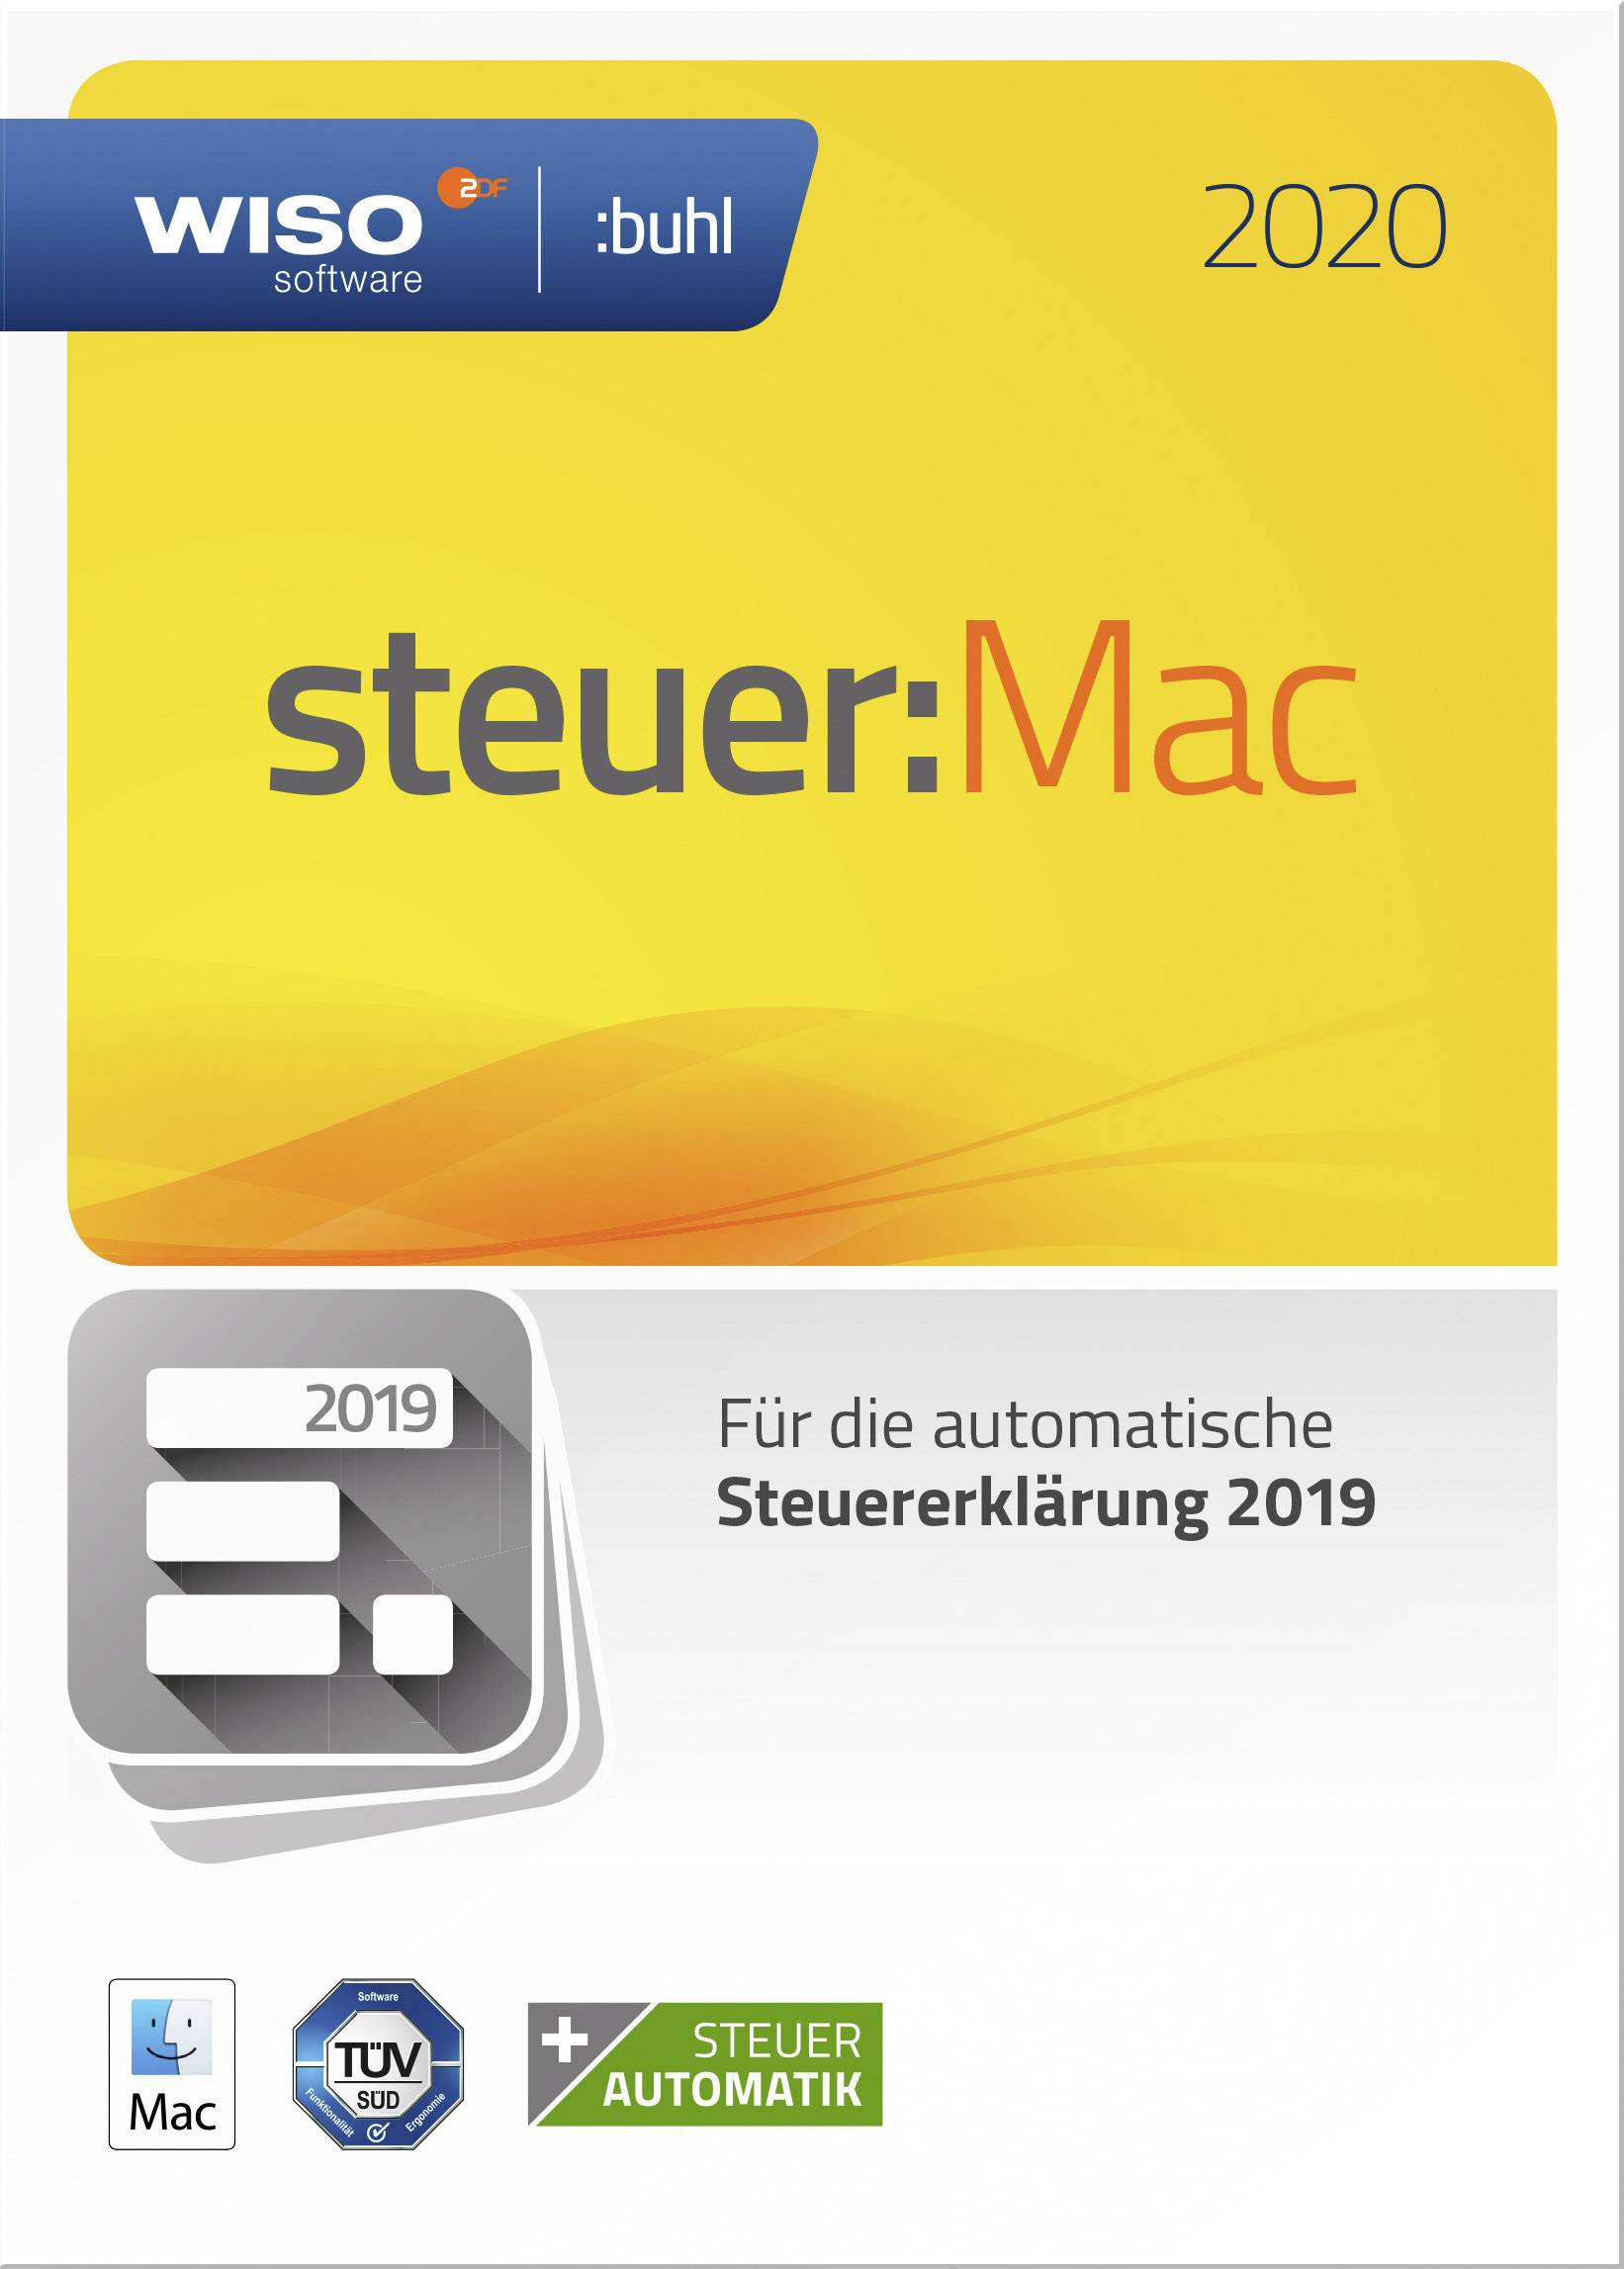 wiso steuer mac 2017 download